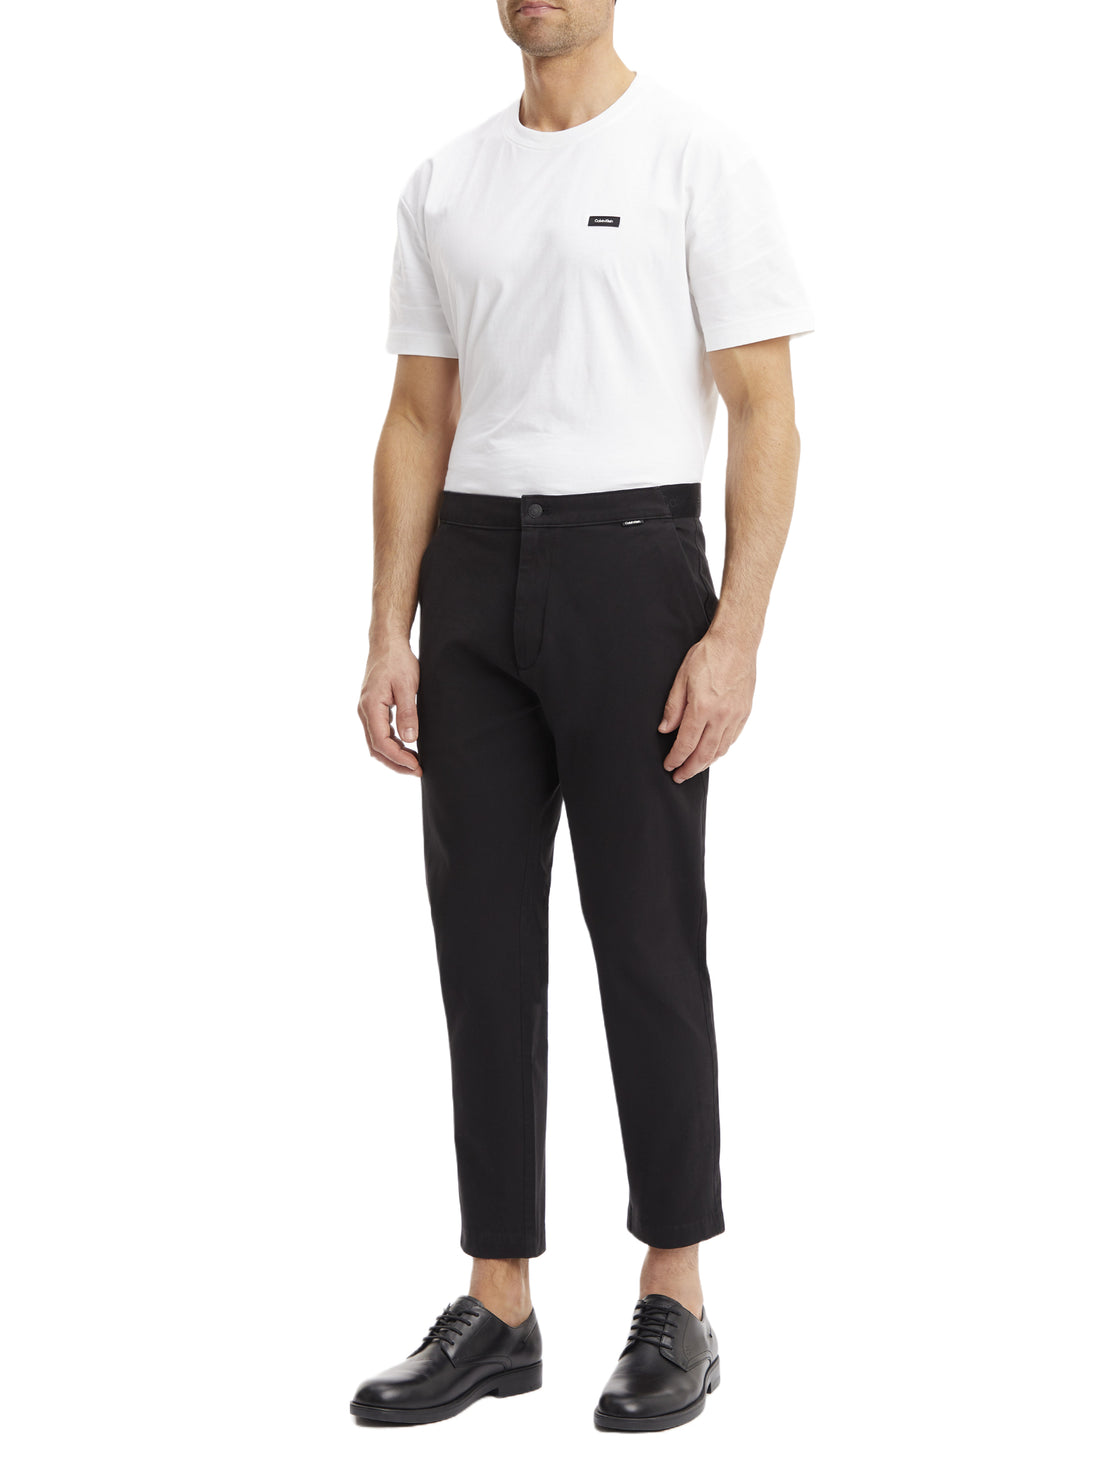 Pantaloni Nero Calvin Klein